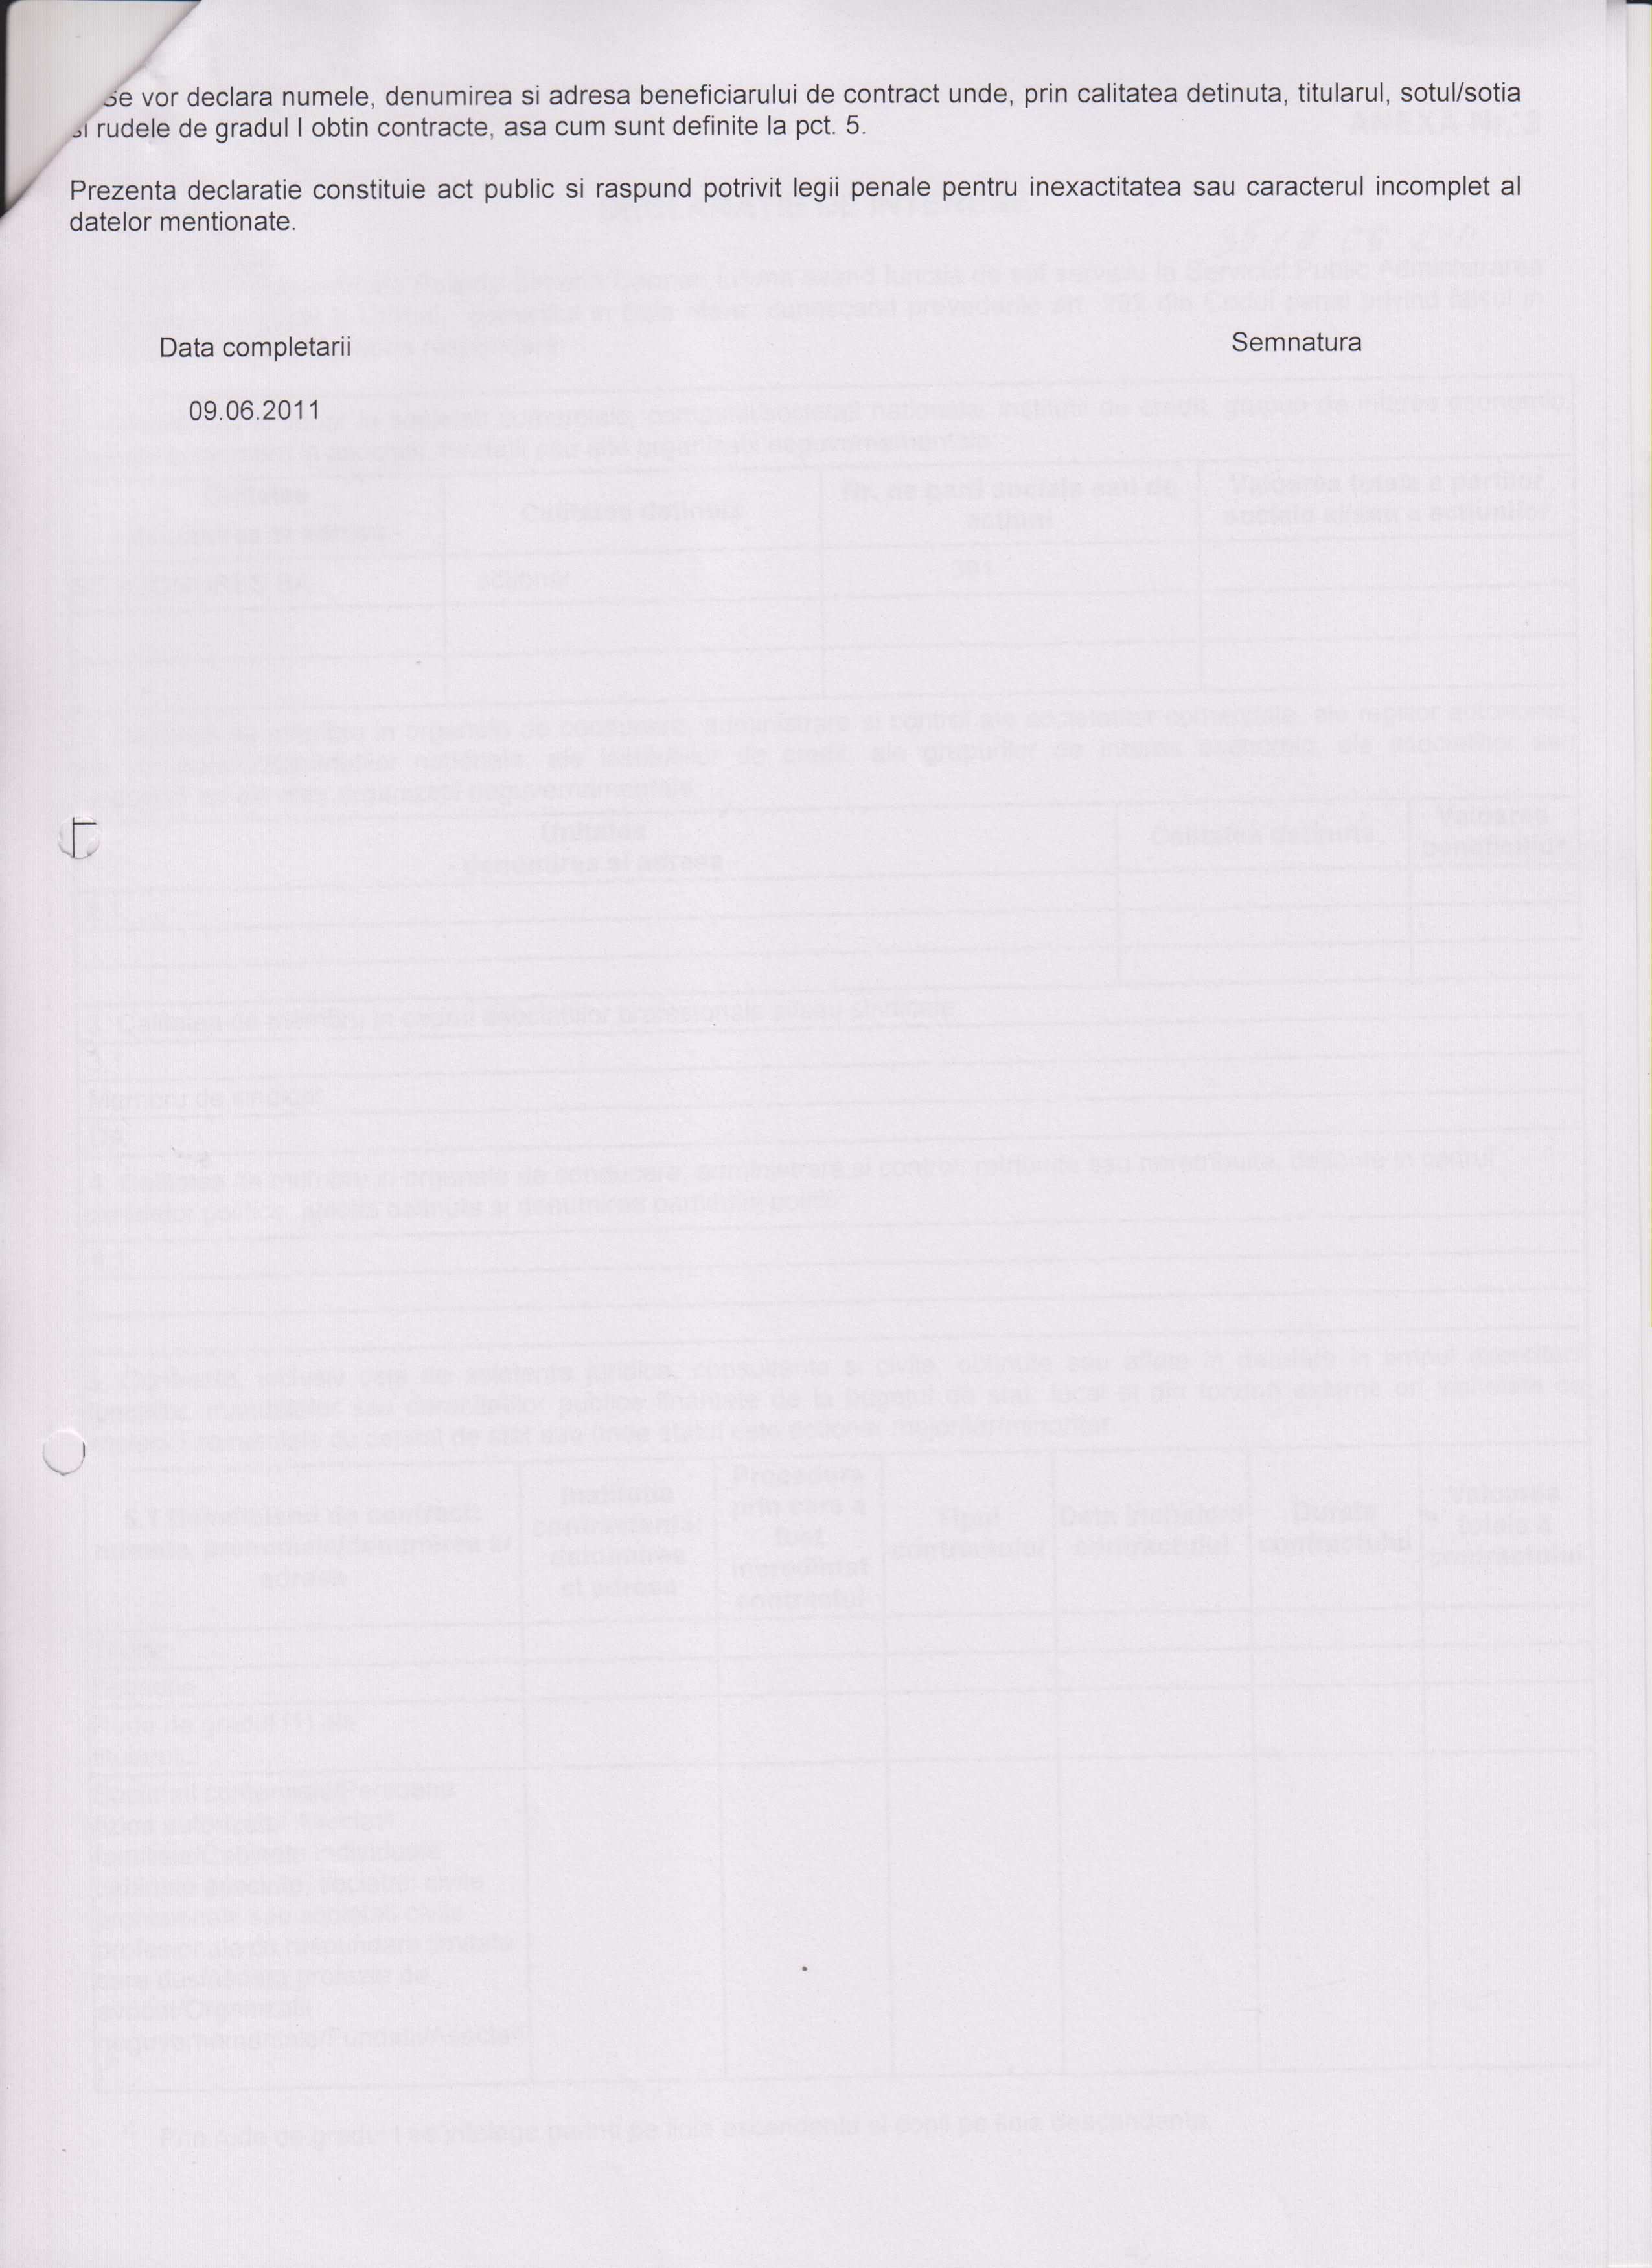 Declaratia de avere si de interese din data 21.09.2011 - pagina 6 din 6